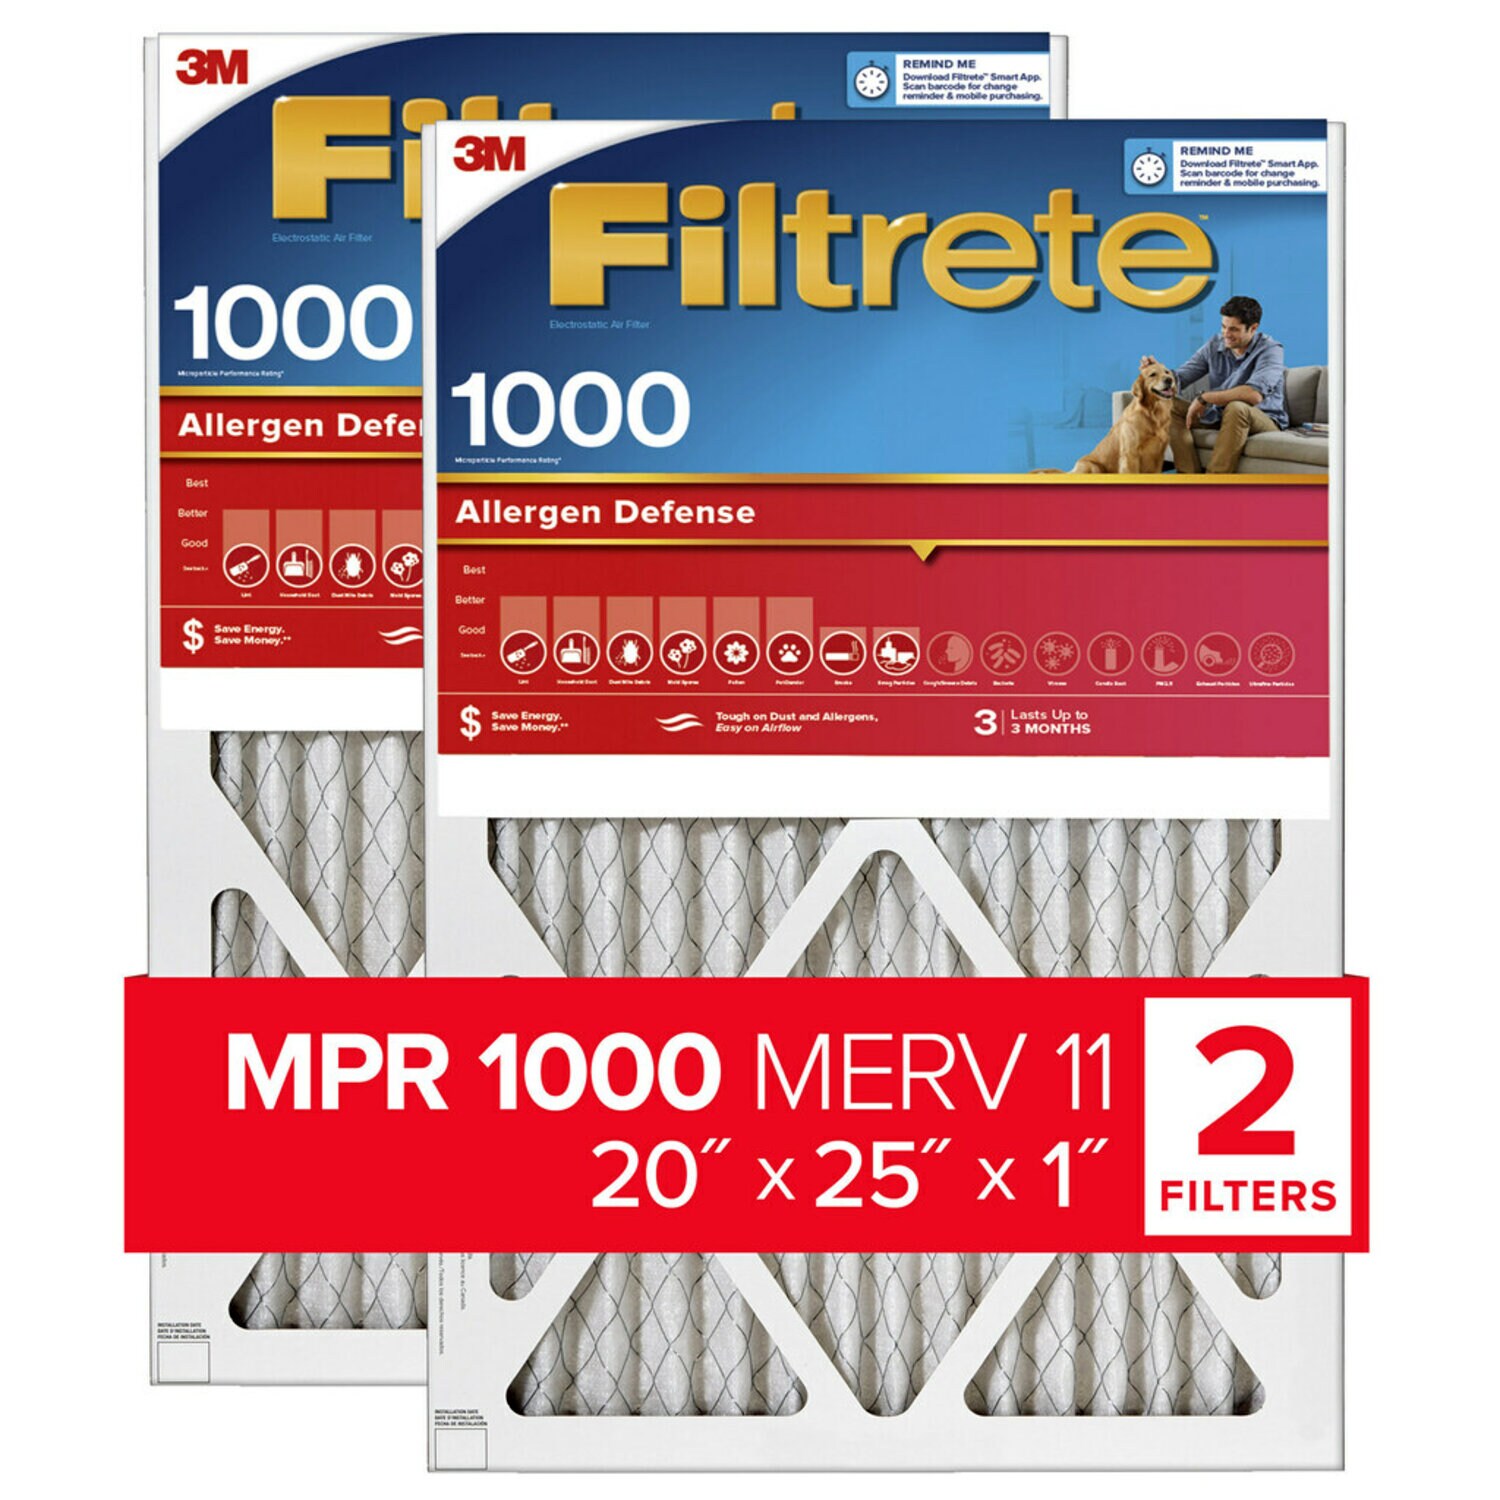 7100188252 - Filtrete Allergen Defense Air Filter, 1000 MPR, 9803-2PK-HDW, 20 in x
25 in x 1 in (50,8 cm x 63,5 cm x 2,5 cm)